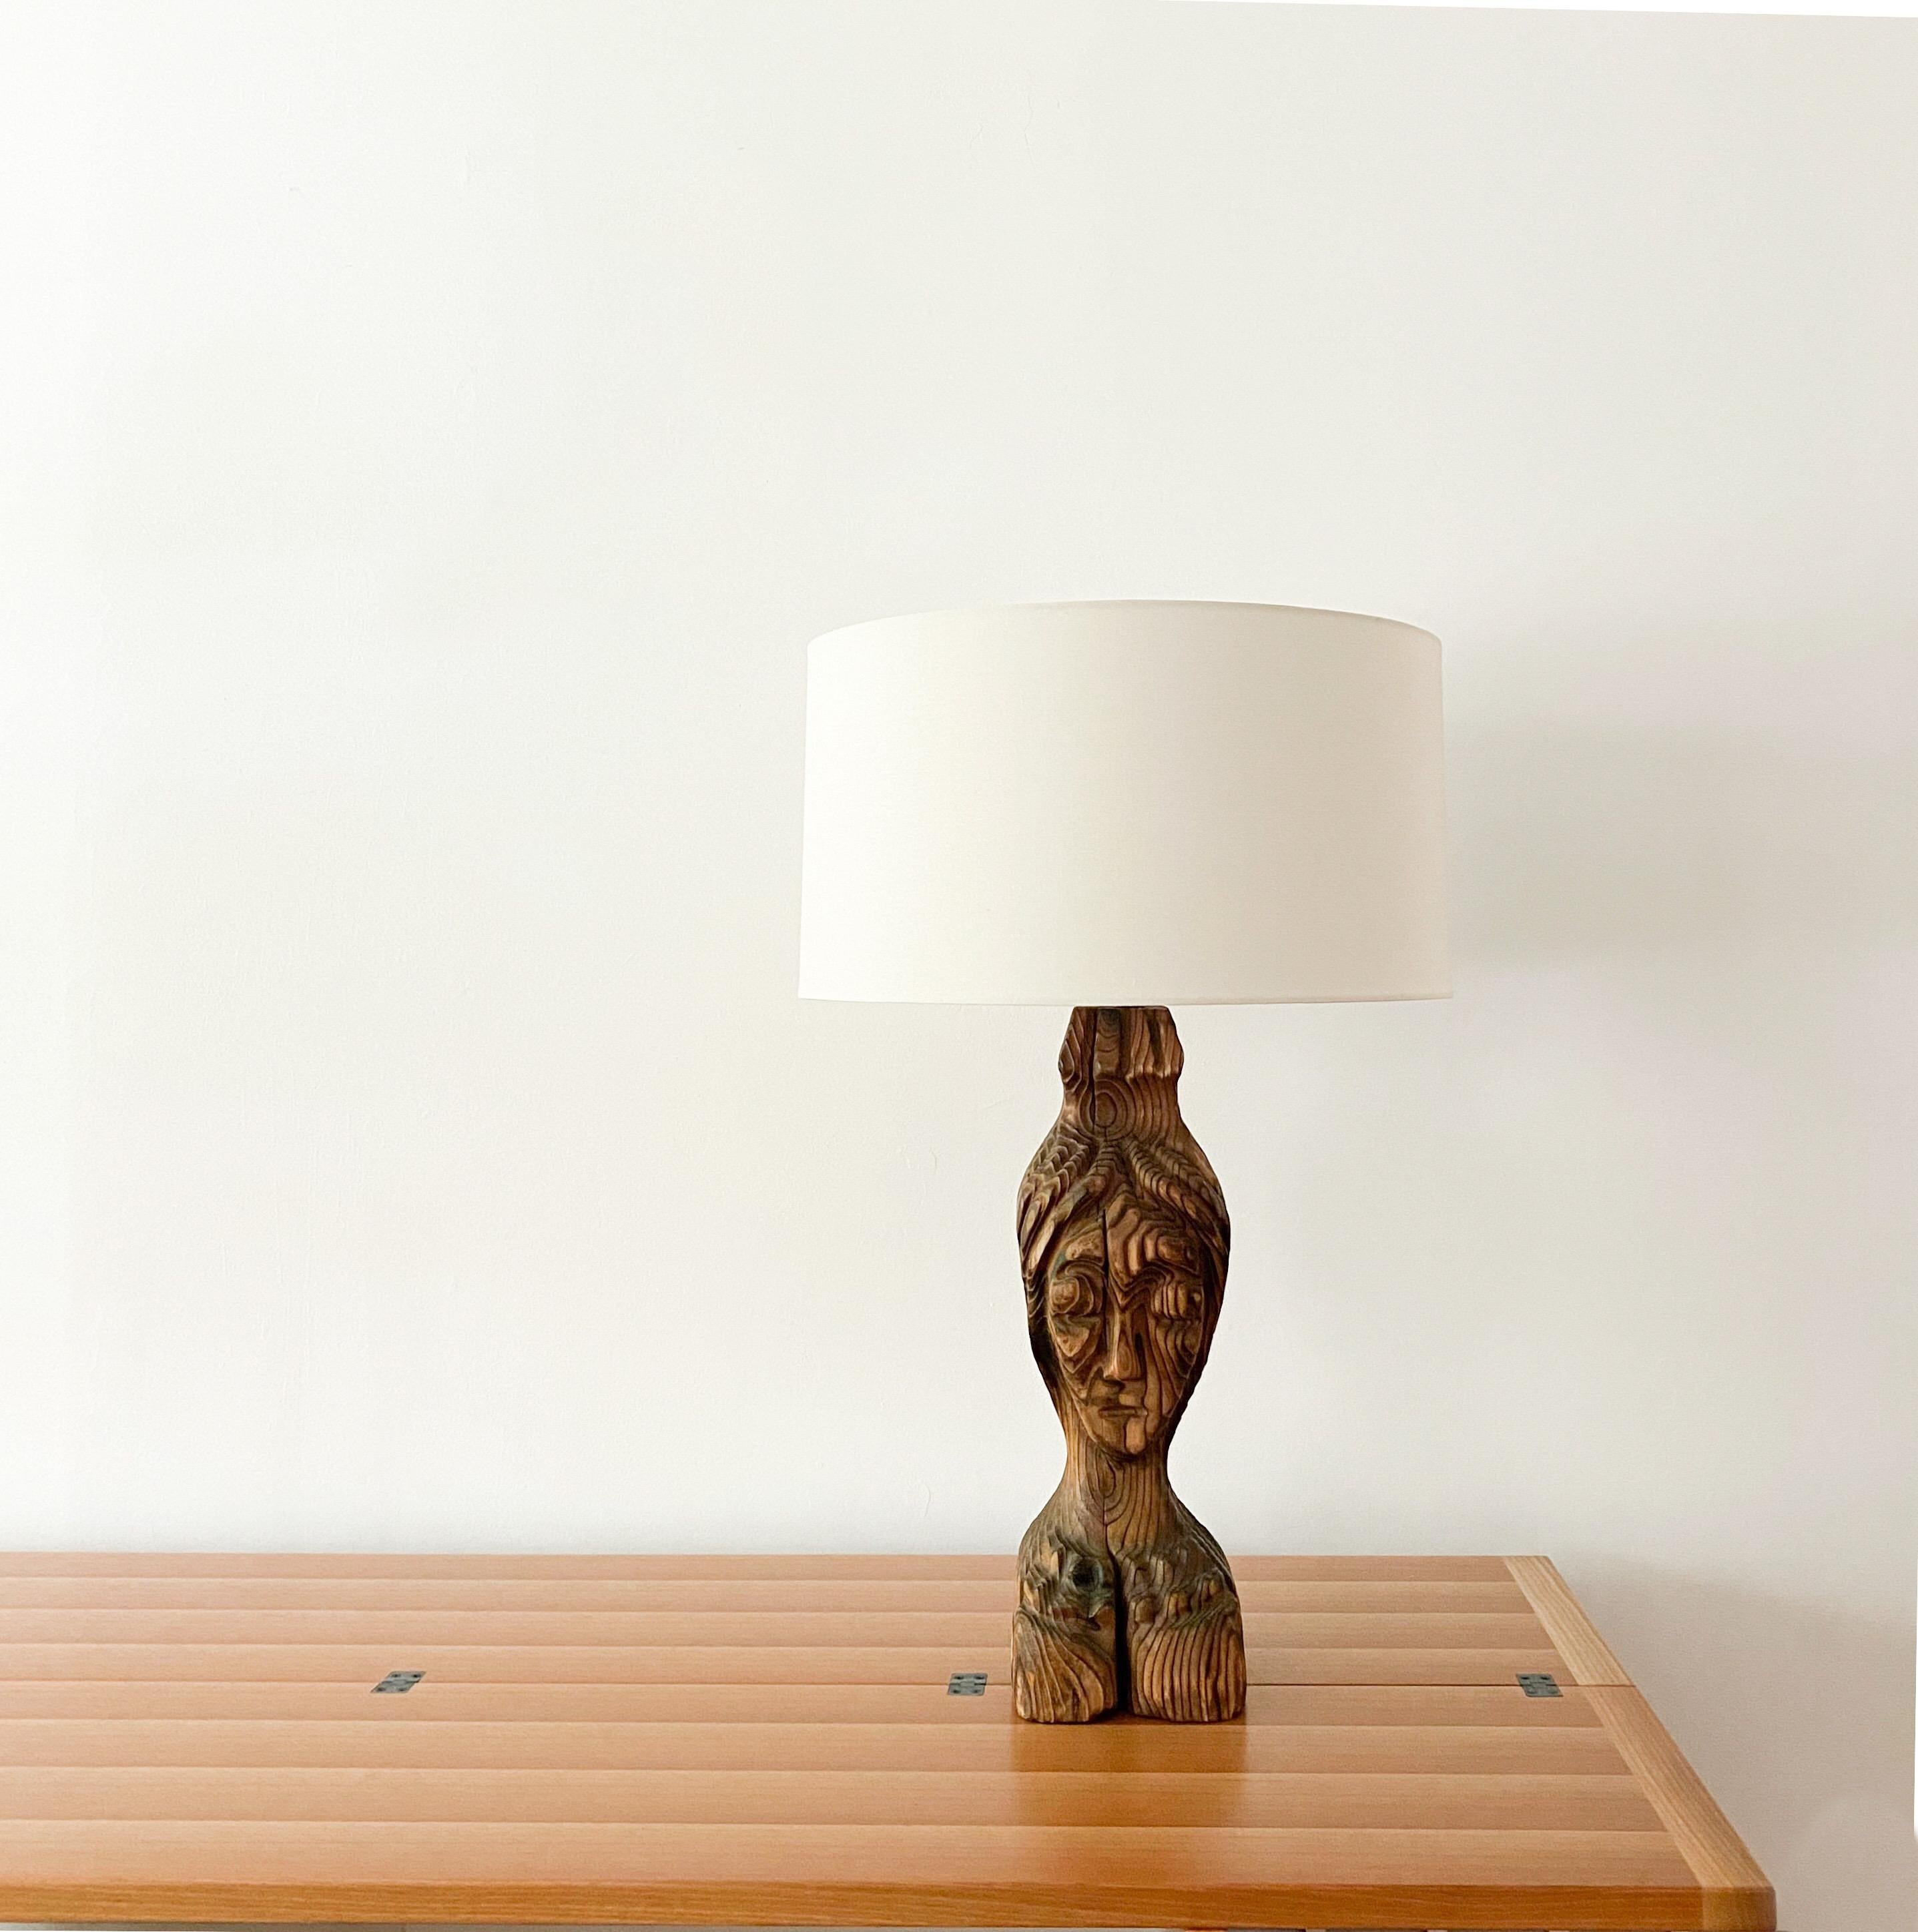 Cette lampe sculpturale en bois, sculptée à la main et fabriquée par Witco, date du milieu du 20e siècle.  L'imposante lampe a été modernisée à l'aide d'une nouvelle quincaillerie électrique avec une finition en nickel, d'une nouvelle corde en nylon